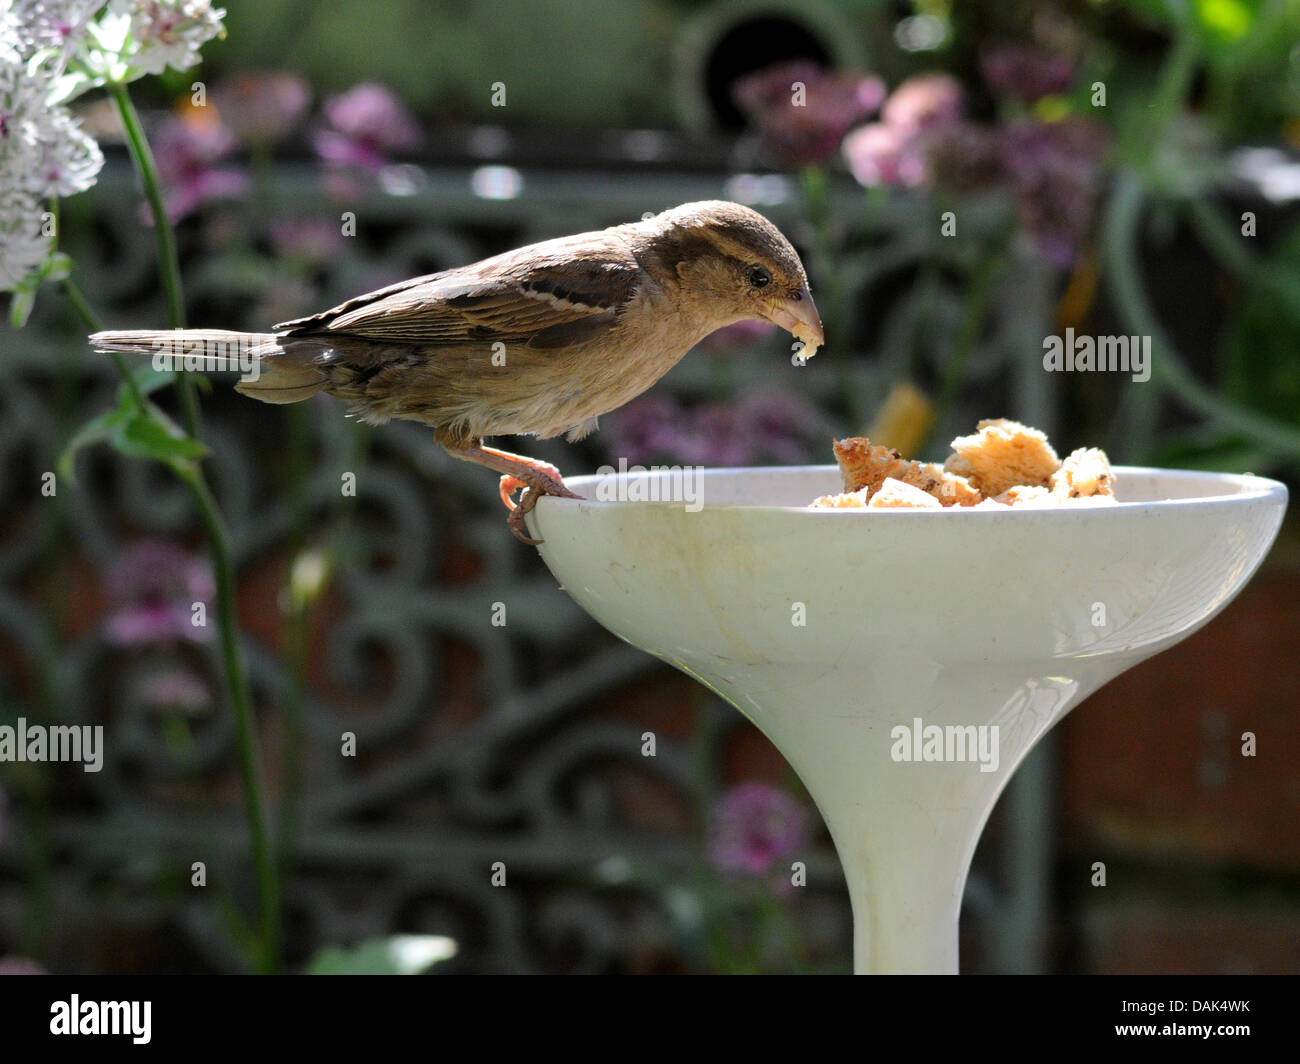 A small sparrow visiting a bird feeder. Stock Photo